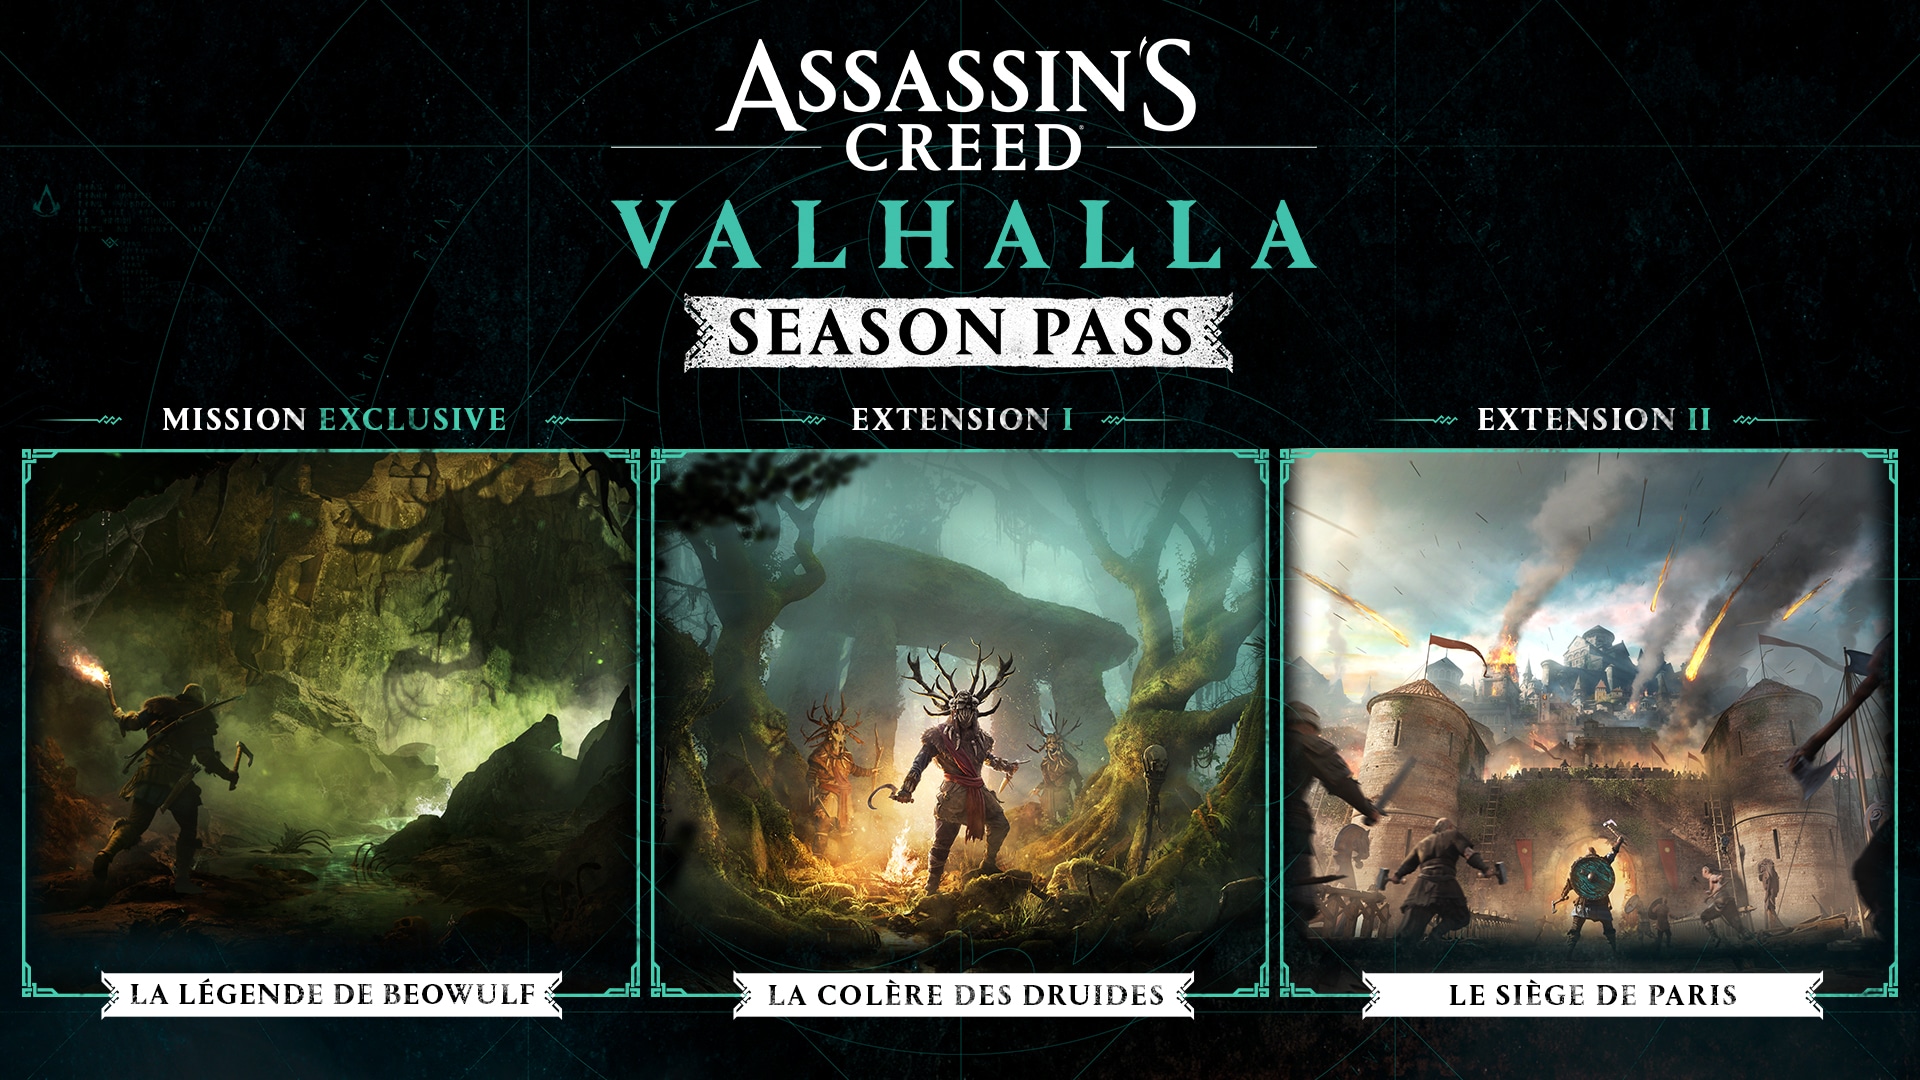 Assassin's creed valhalla season pass